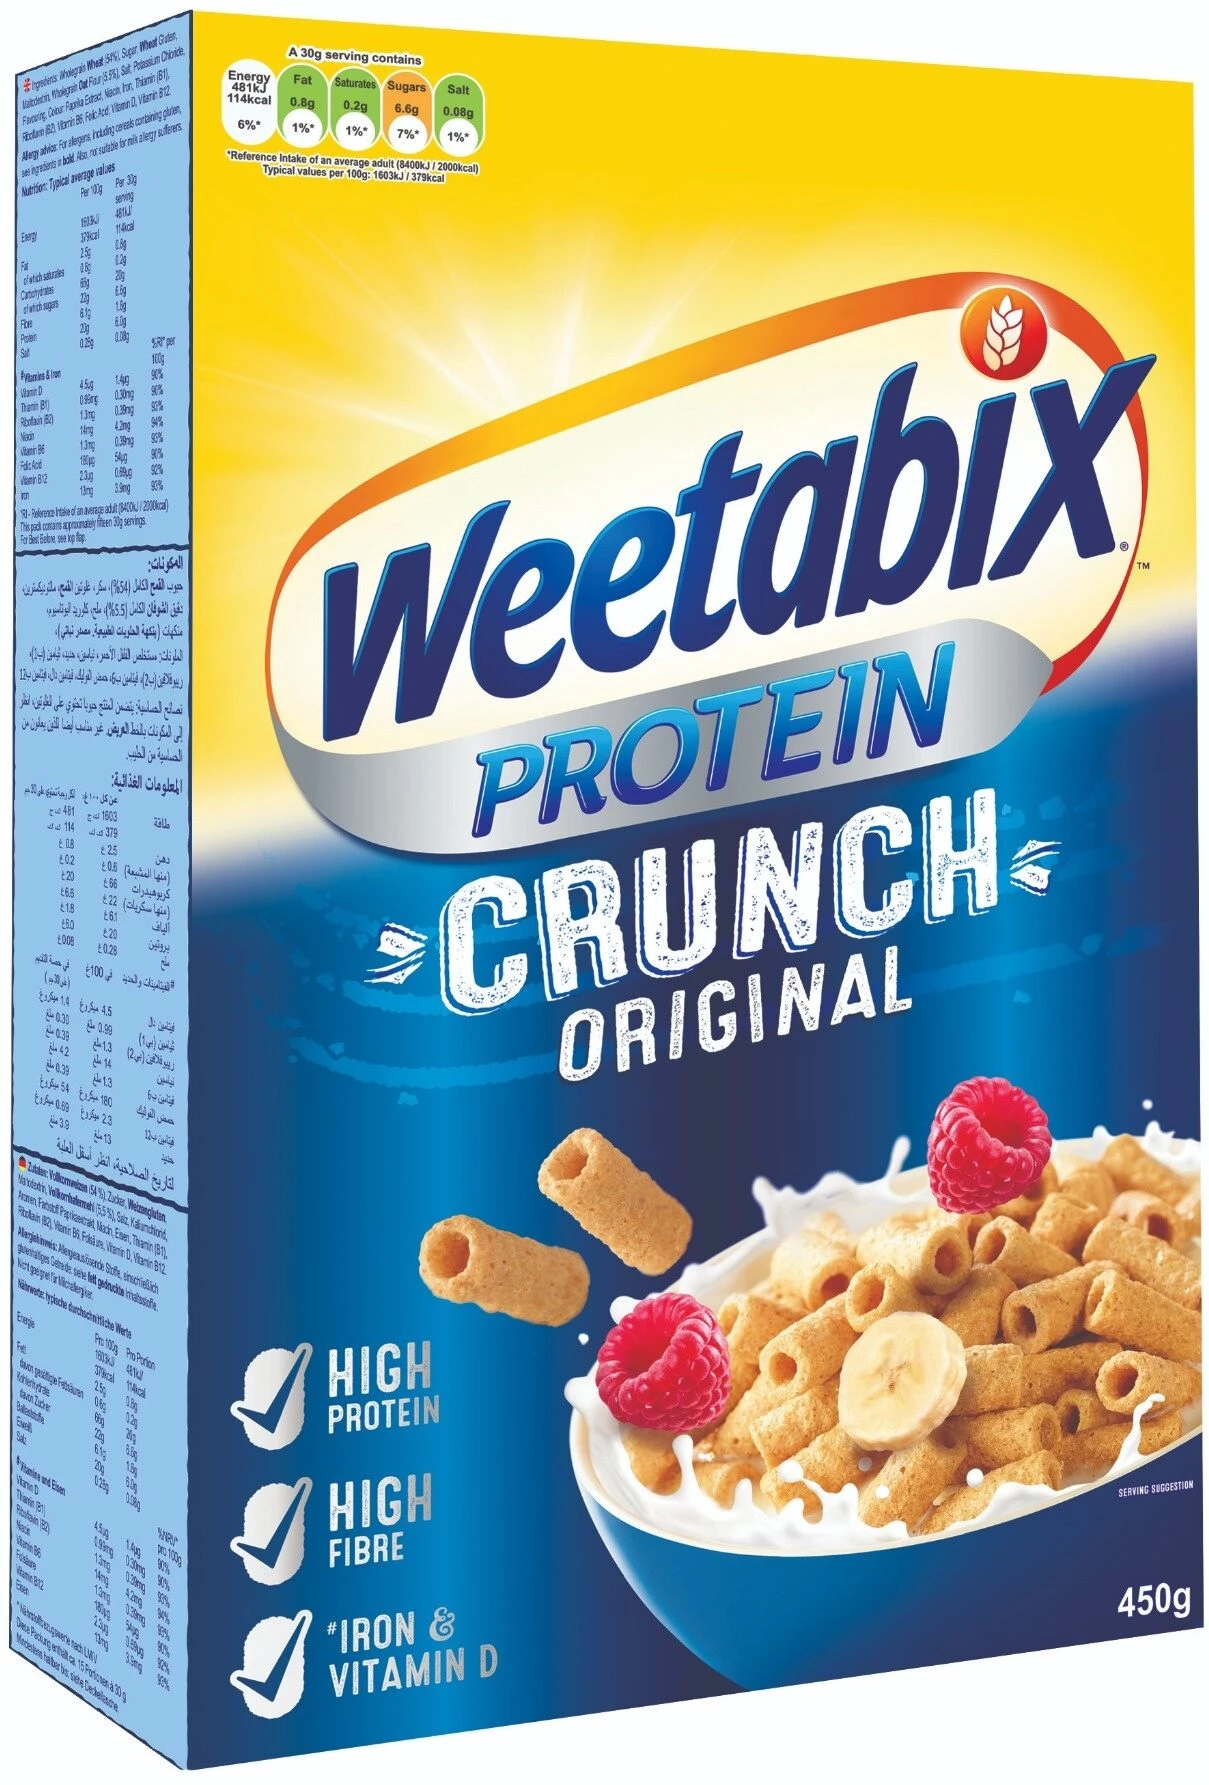 Protein Crunch Original Cereal, 450g - WEETABIX